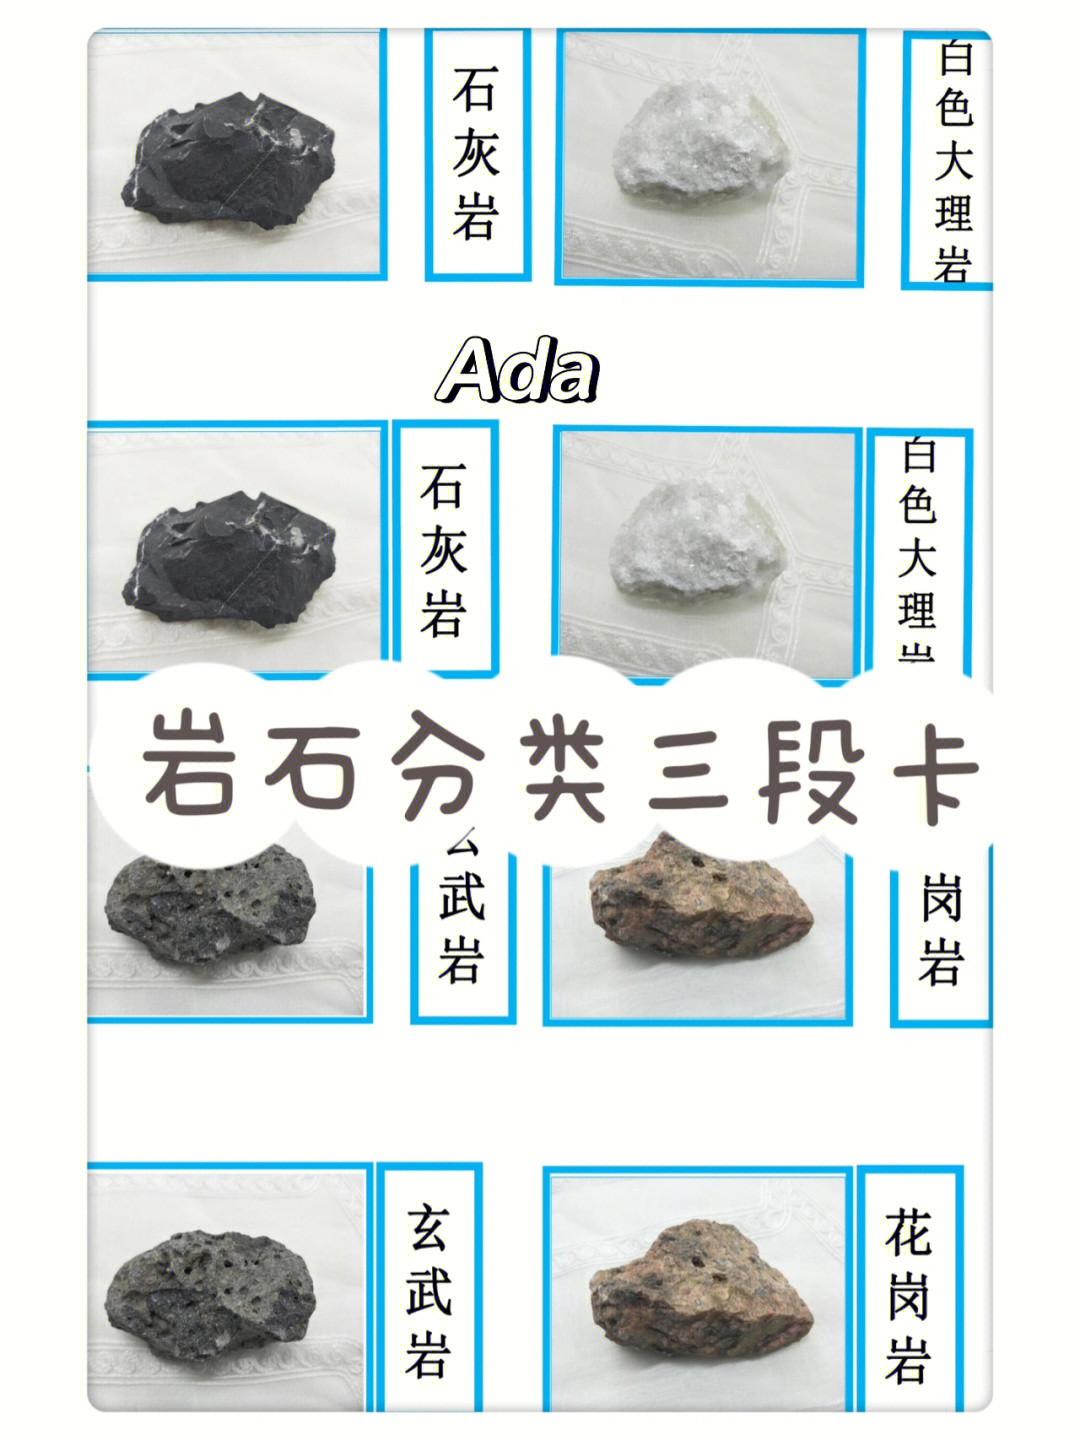 石头的种类和识别图片图片